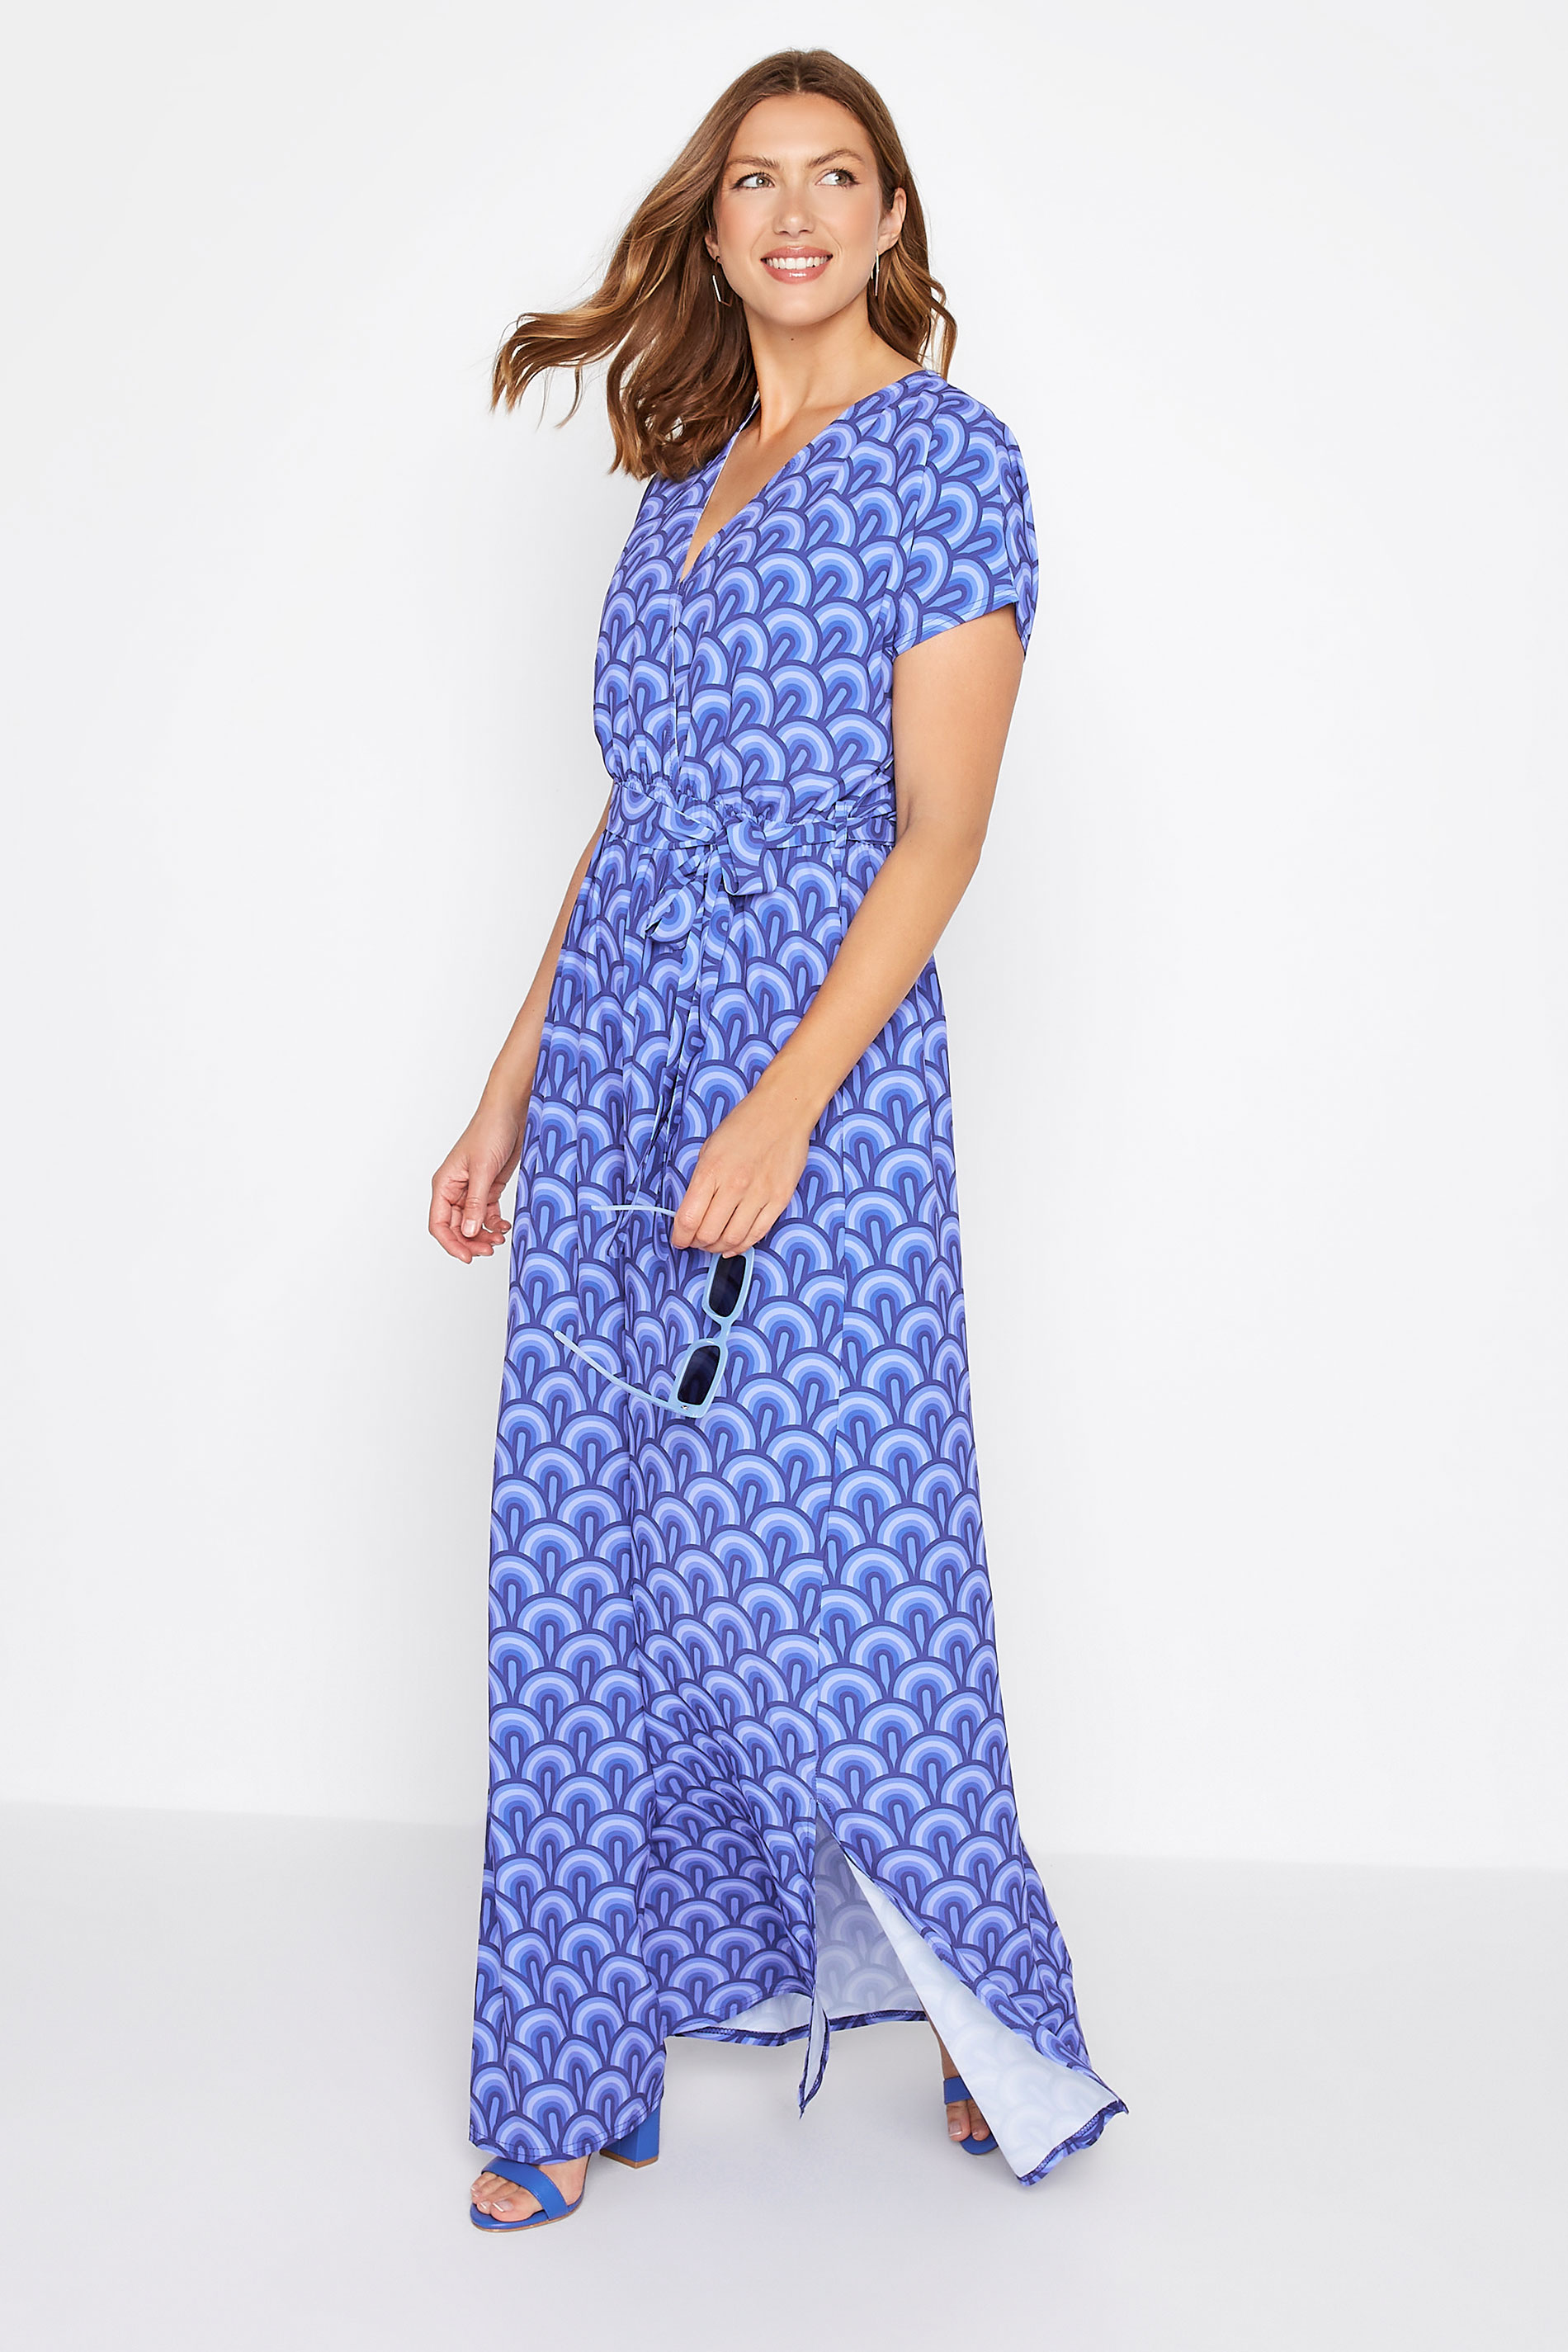 LTS Tall Women's Blue Geometric Print Maxi Dress | Long Tall Sally 2